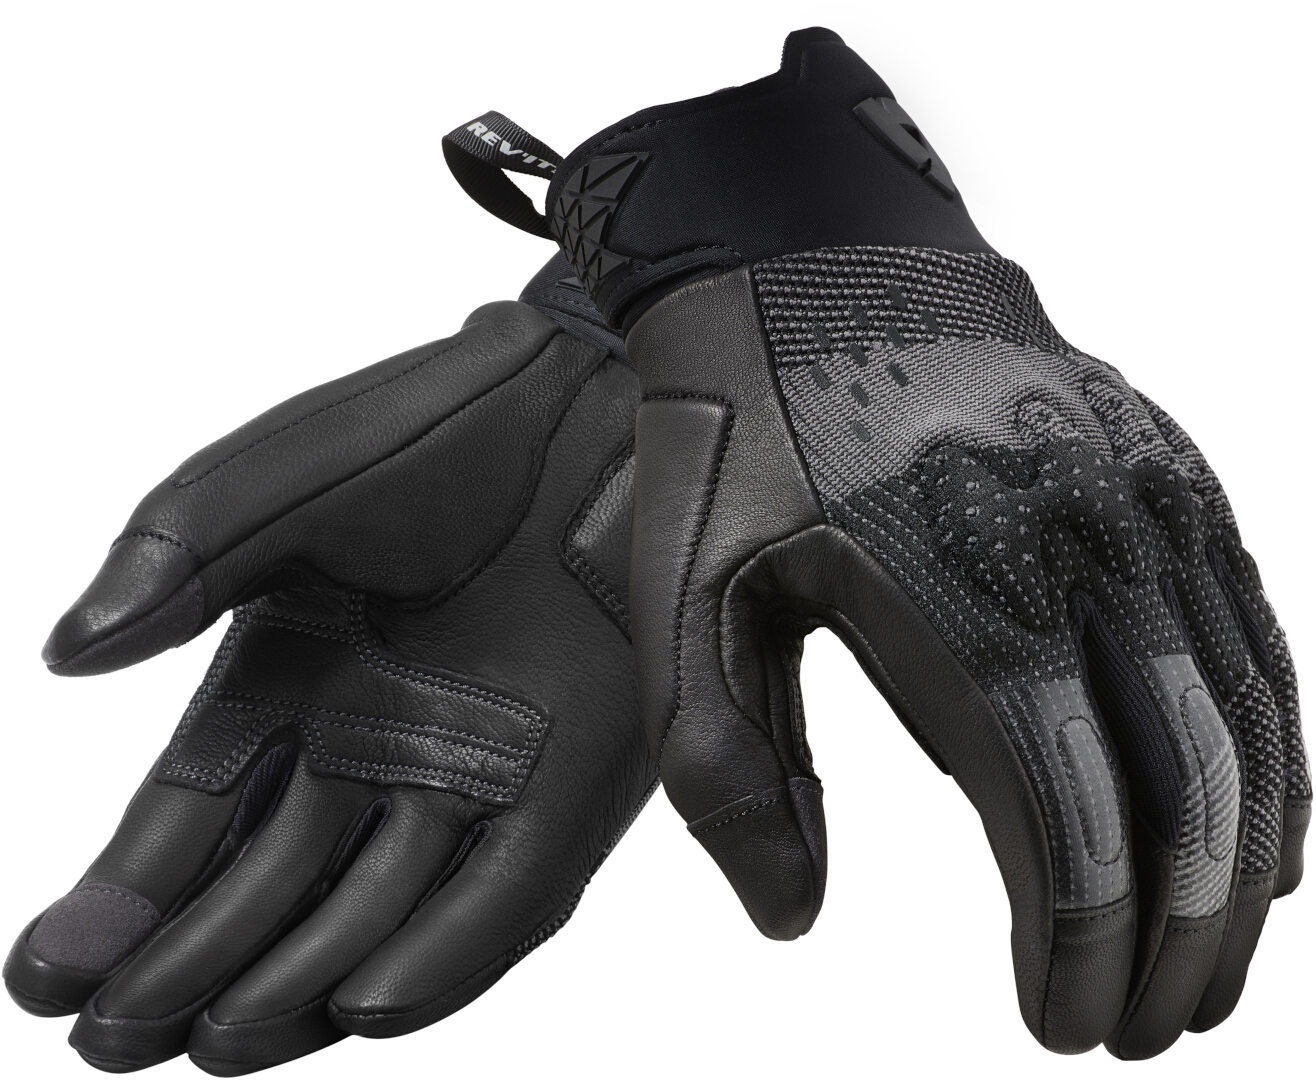 Revit Kinetic De Handschoenen van de motorfiets, zwart-grijs, XL